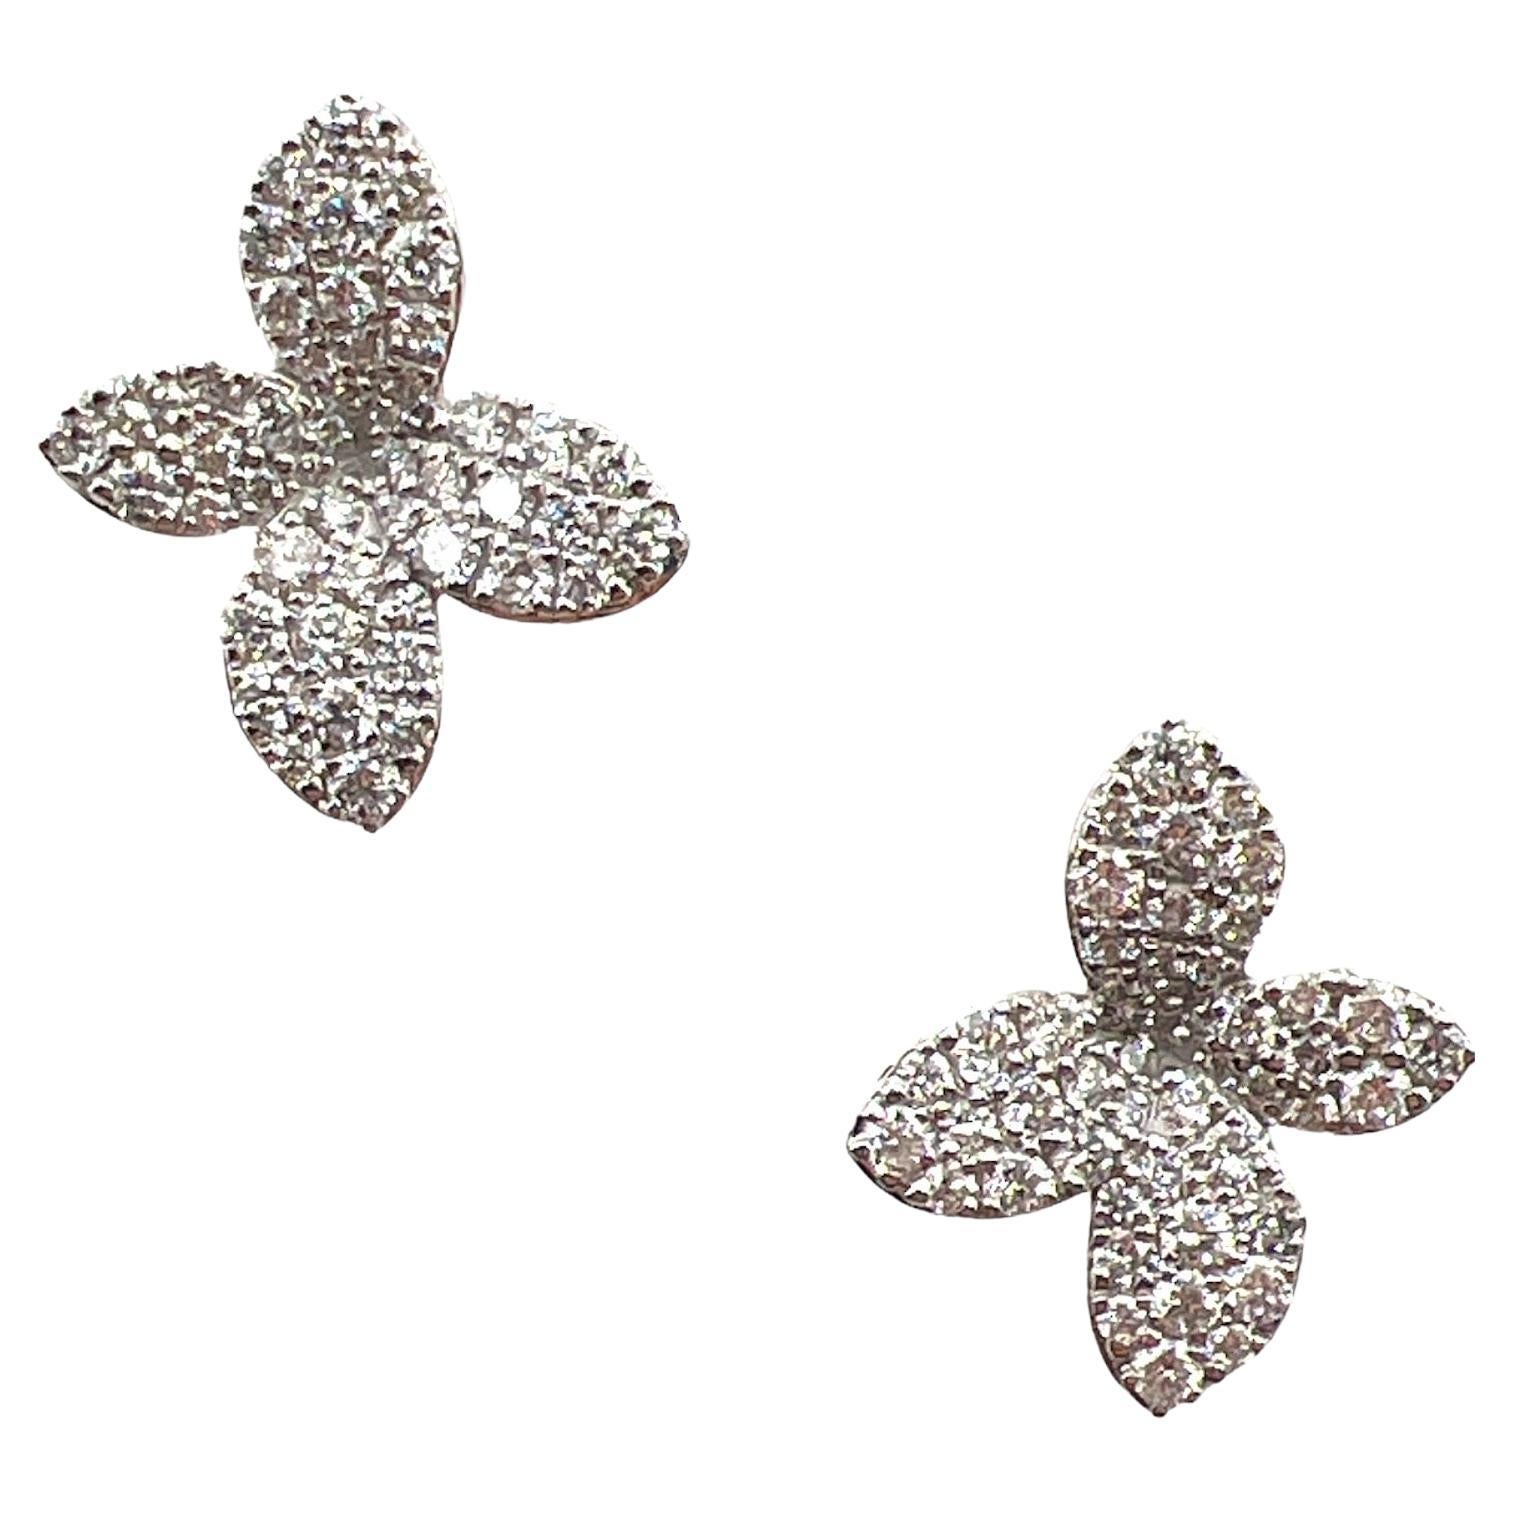 Boucles d'oreilles modernes Pav en or blanc 18 carats avec fleurs et diamants, neuves